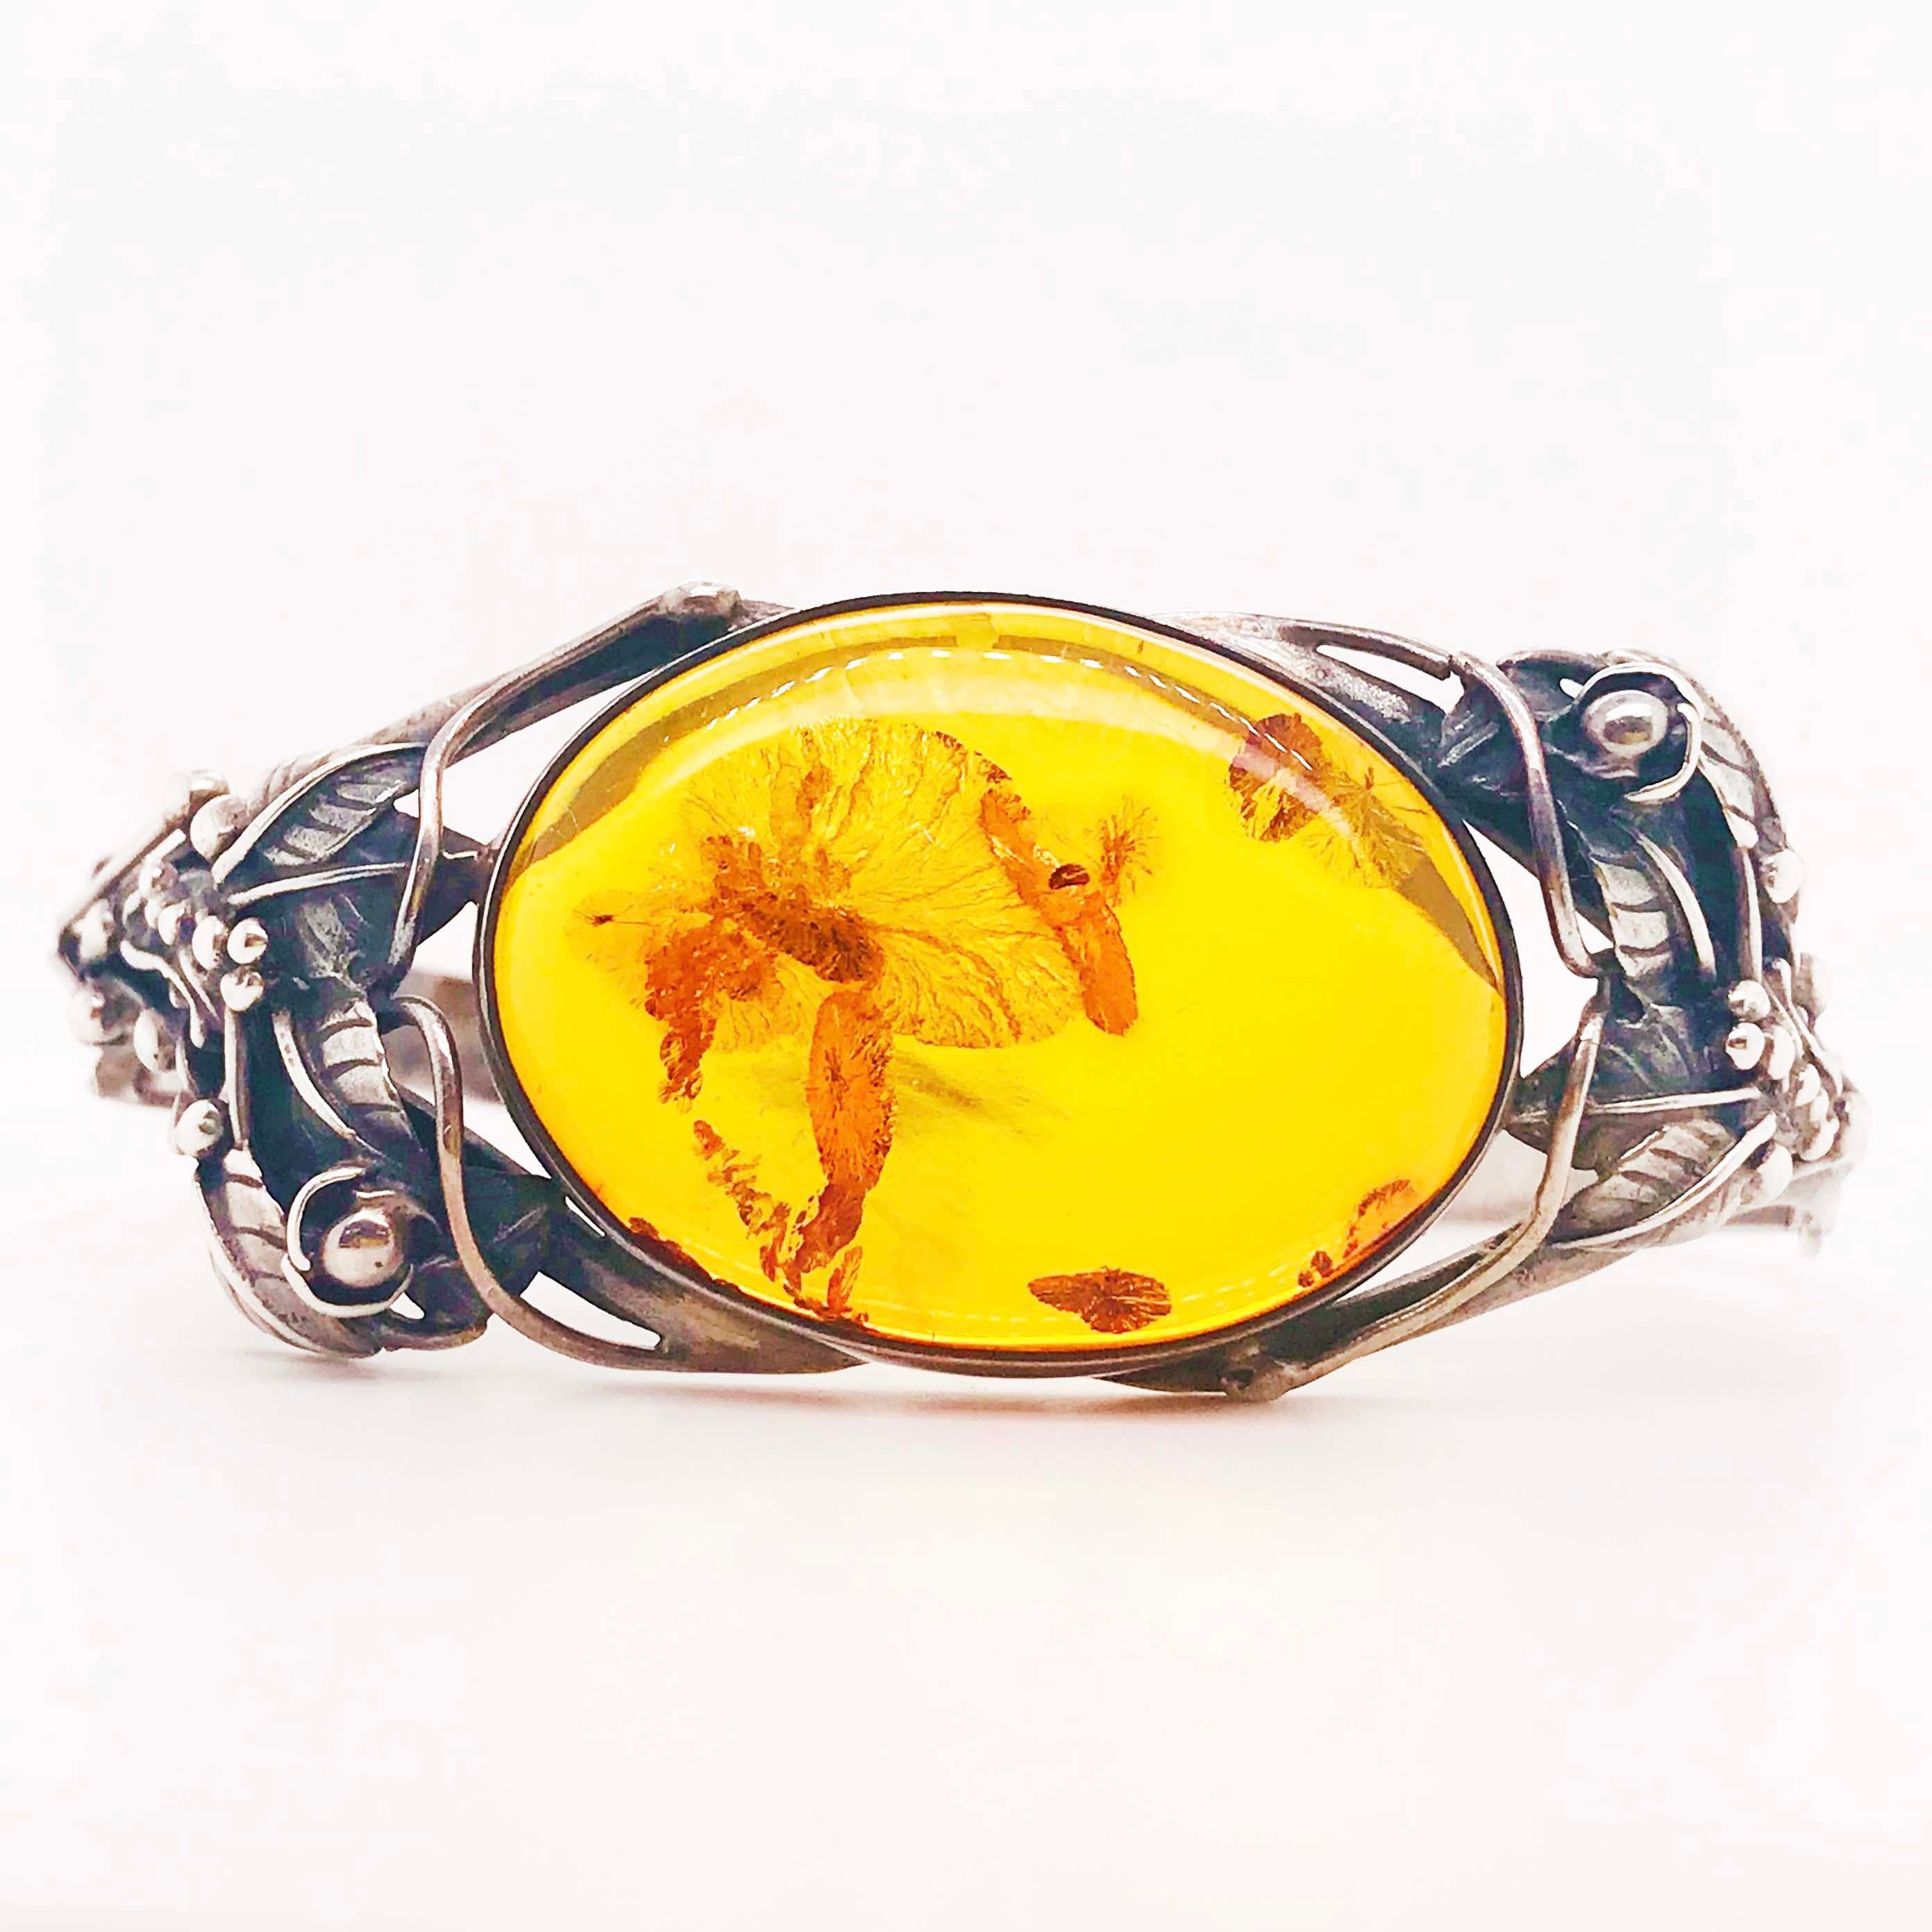 Le bracelet d'ambre original en argent sterling, fabriqué à la main, contient un morceau ovale de pierre précieuse d'ambre qui a sa propre histoire. L'ambre est une résine provenant de pins anciens qui a durci pendant une longue période. À